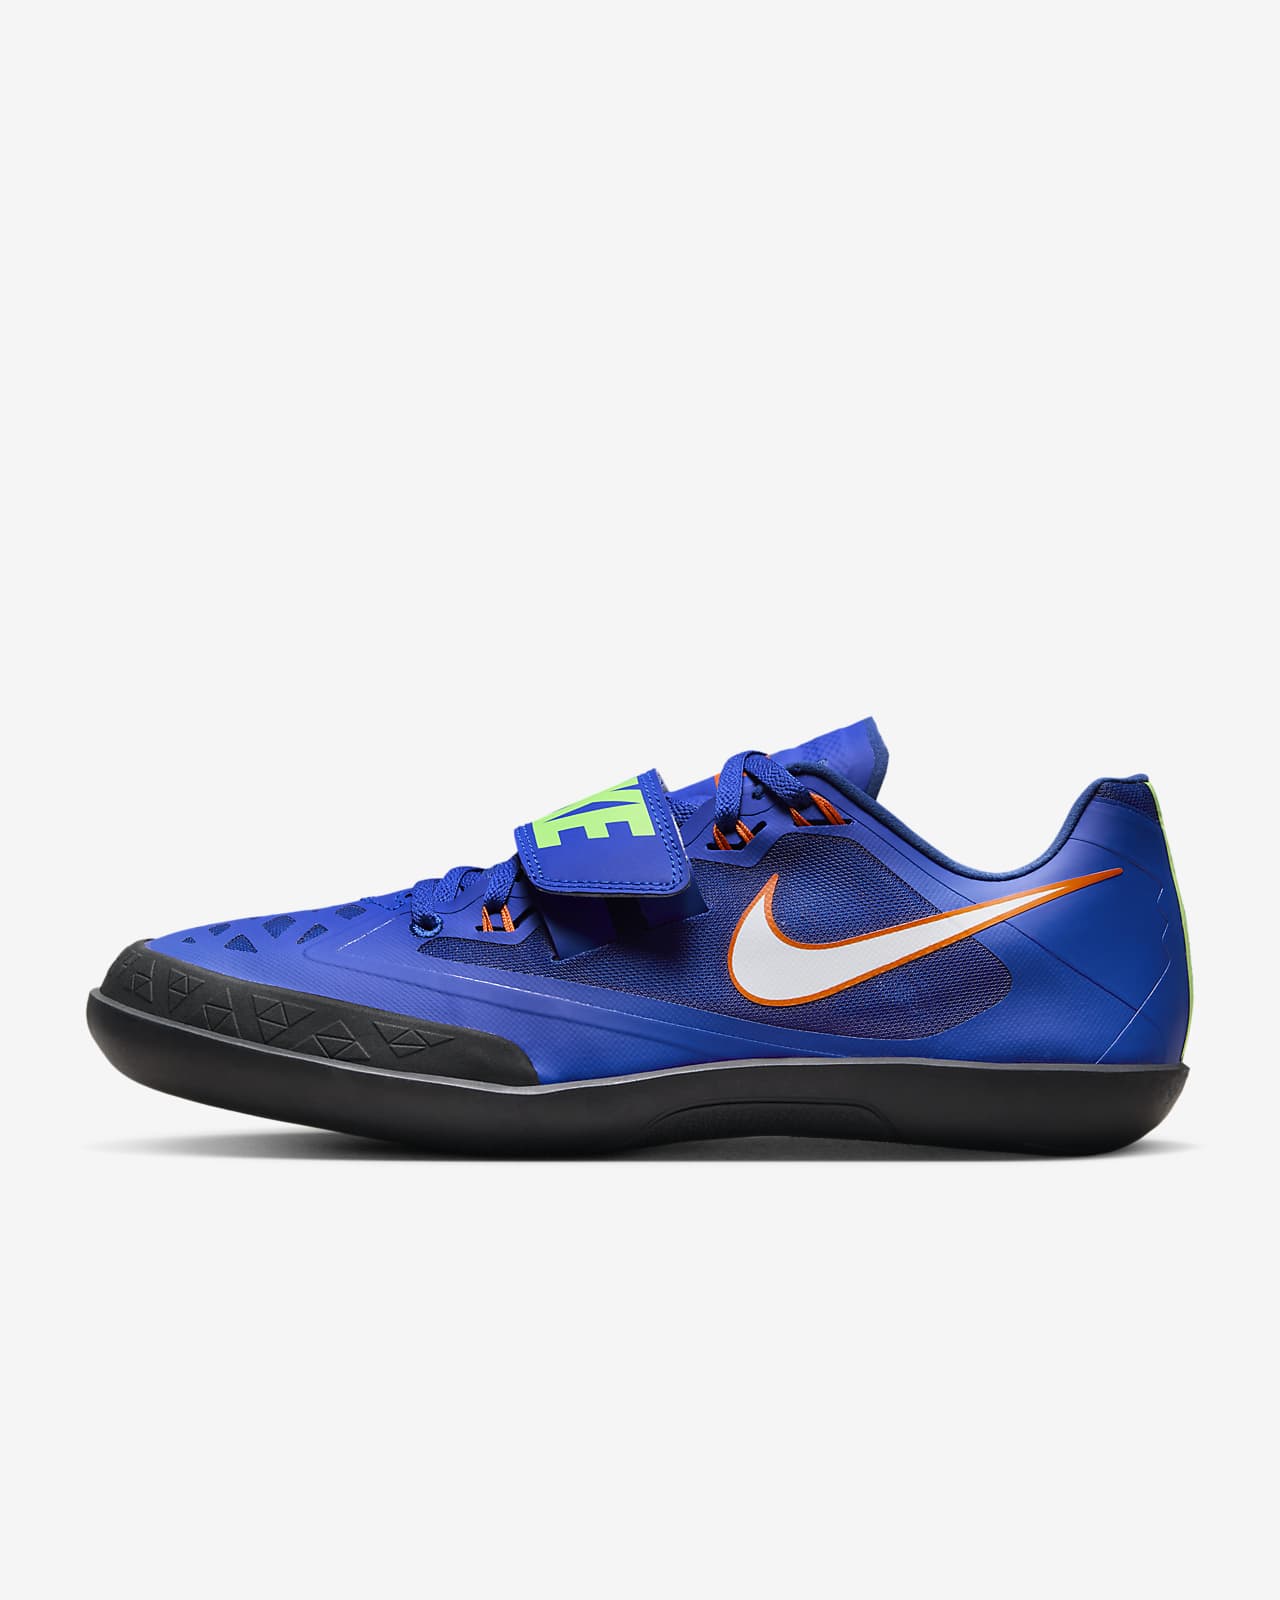 Παπούτσια στίβου για αθλήματα ρίψεων Nike Zoom SD 4